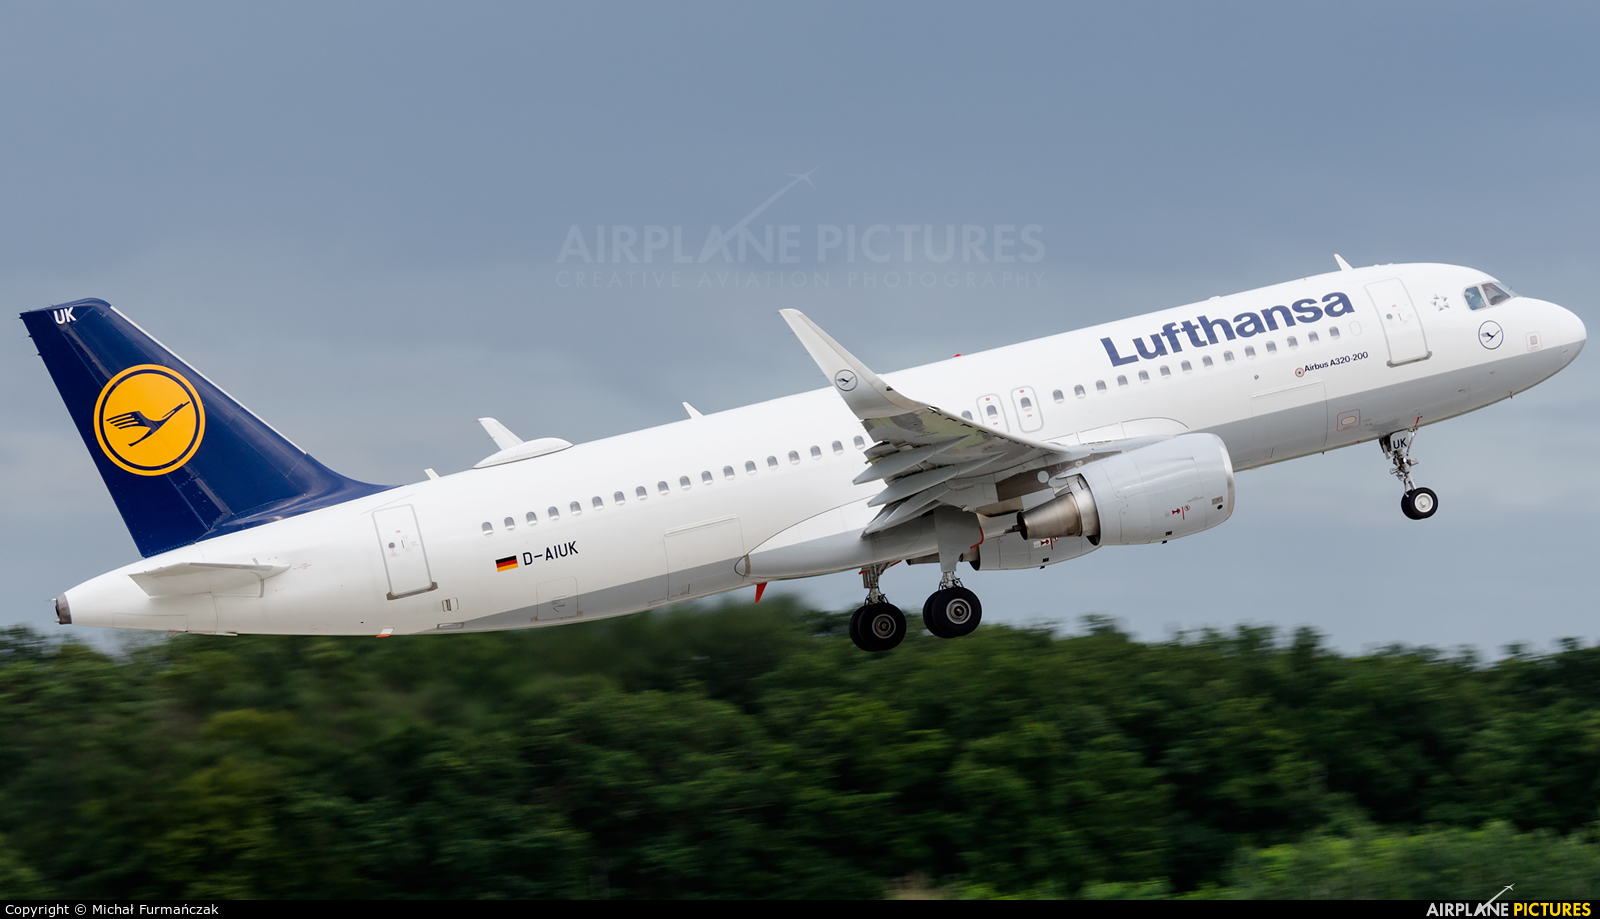 Lufthansa D-AIUK aircraft at Frankfurt